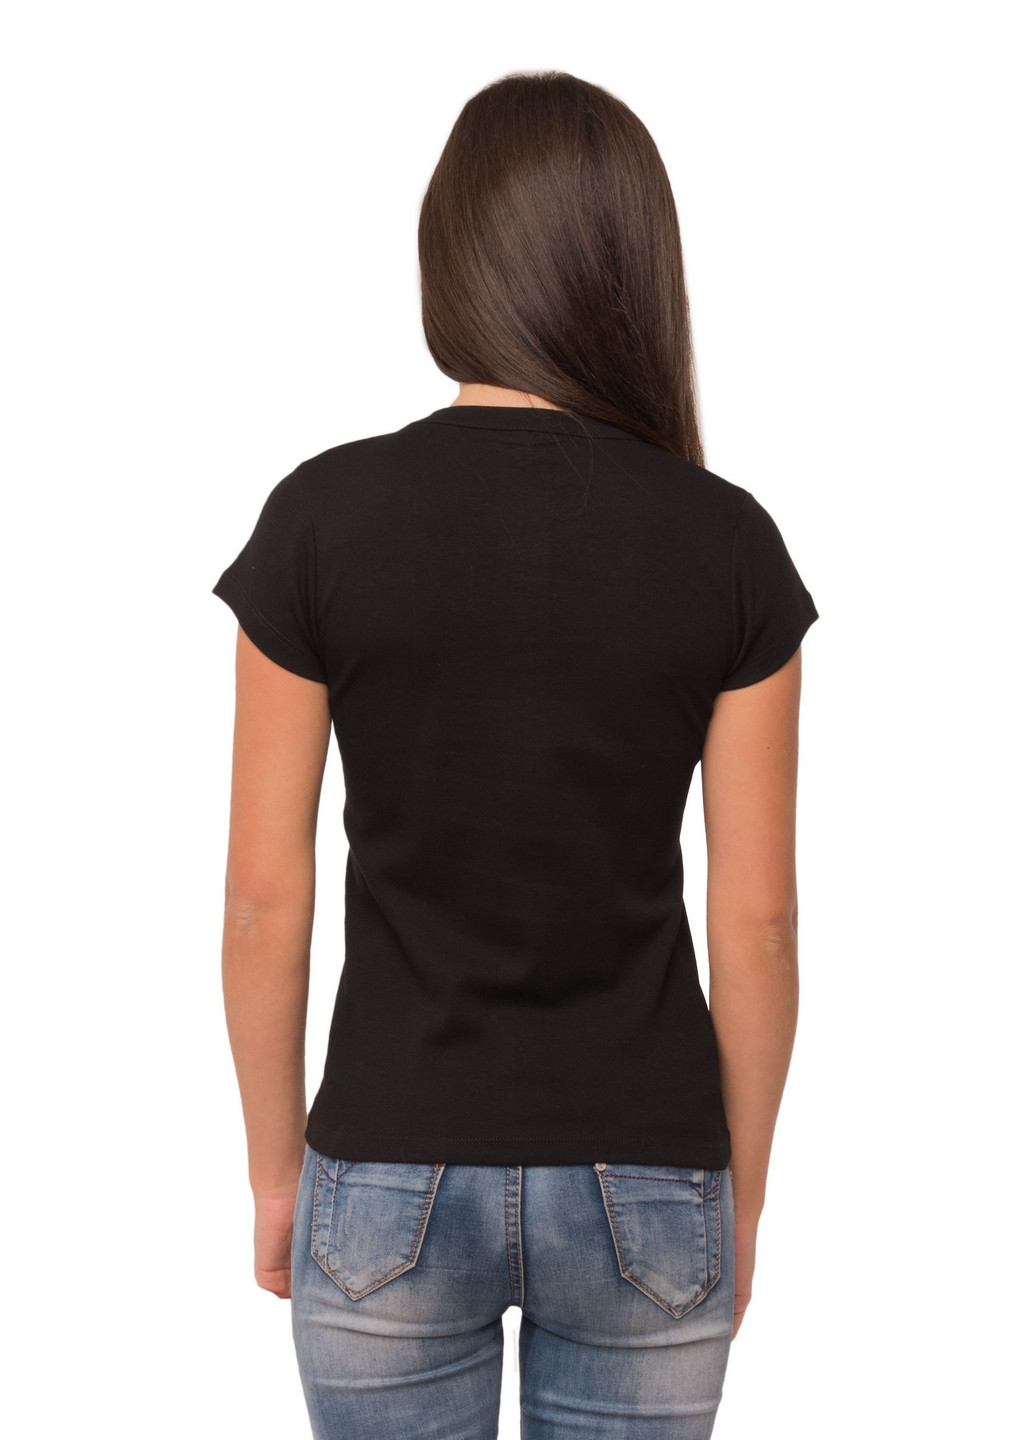 Черная всесезон футболка женская Наталюкс 21-2369